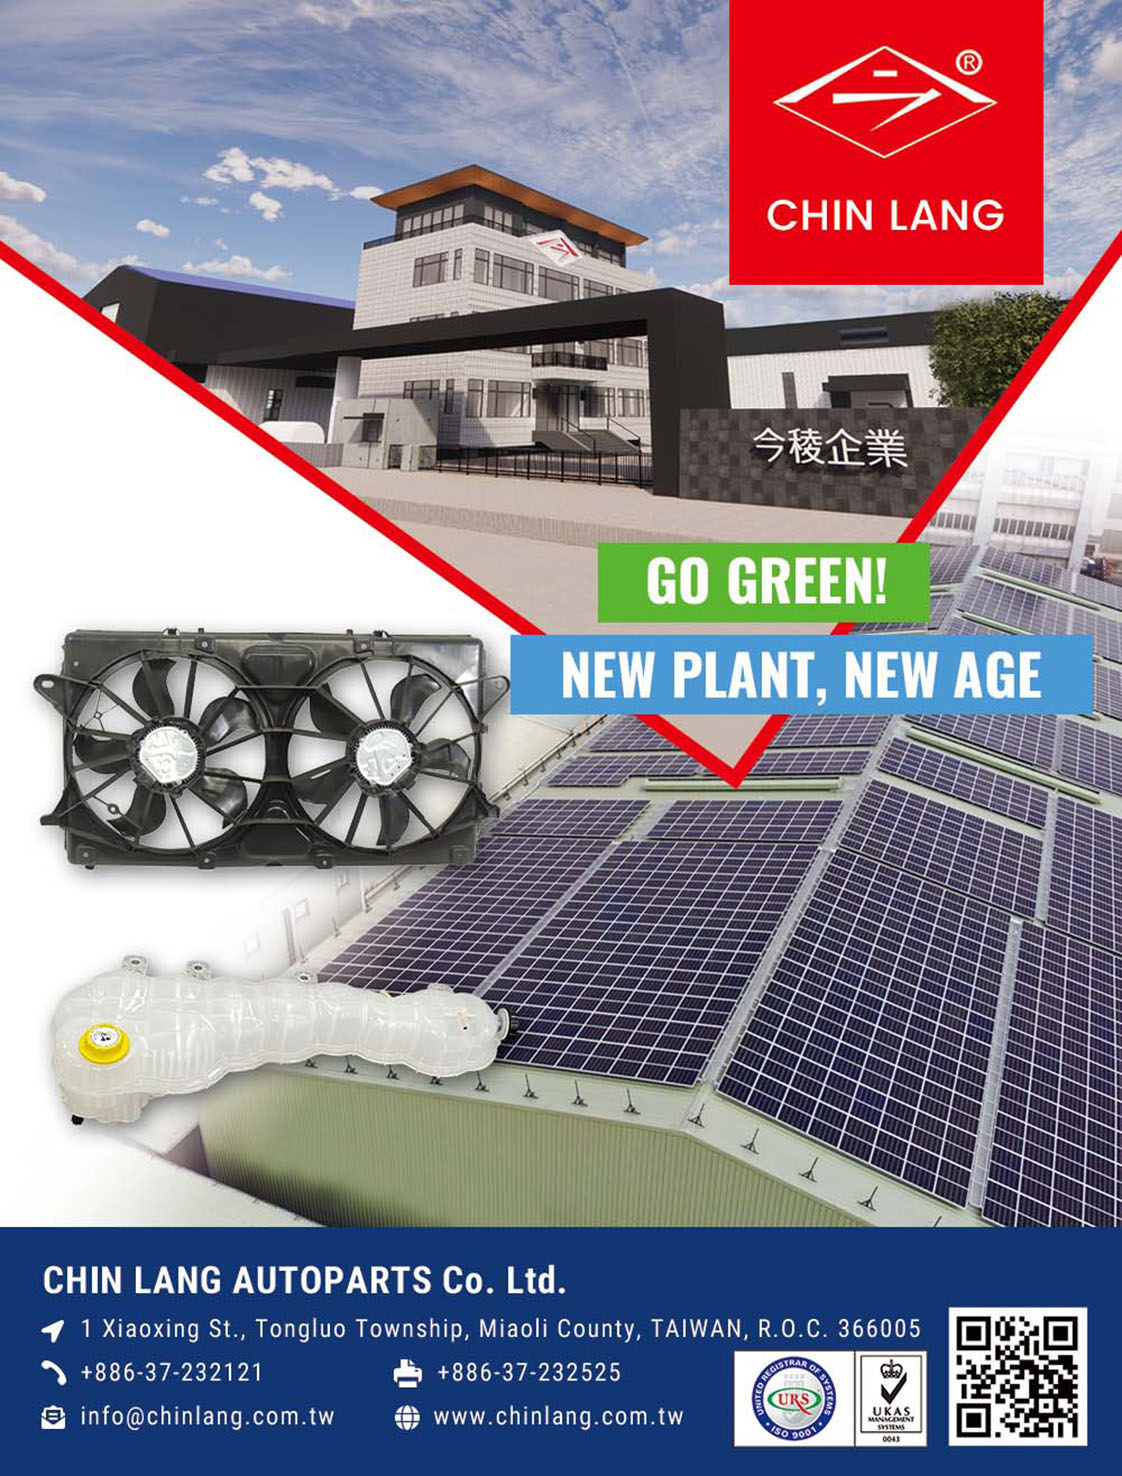 CHIN LANG AUTOPARTS CO., LTD.